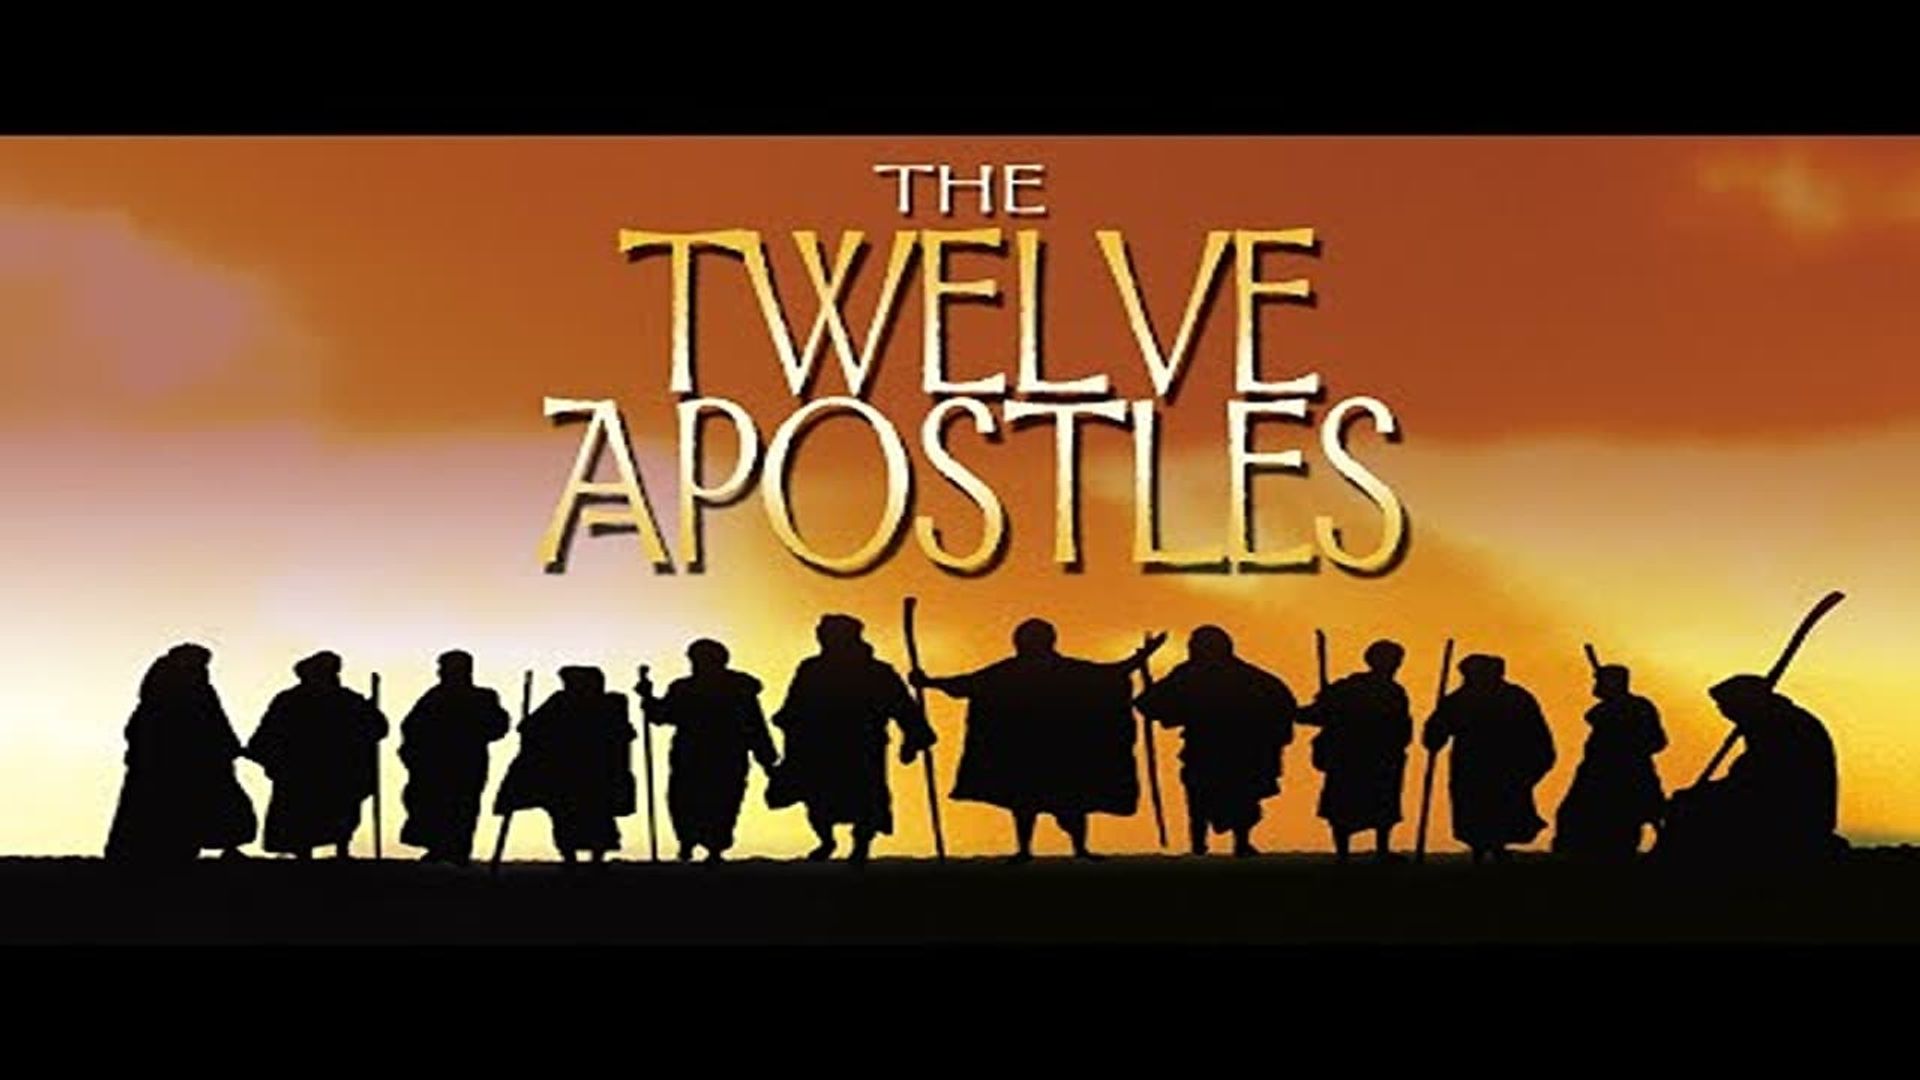 The Twelve Apostles background